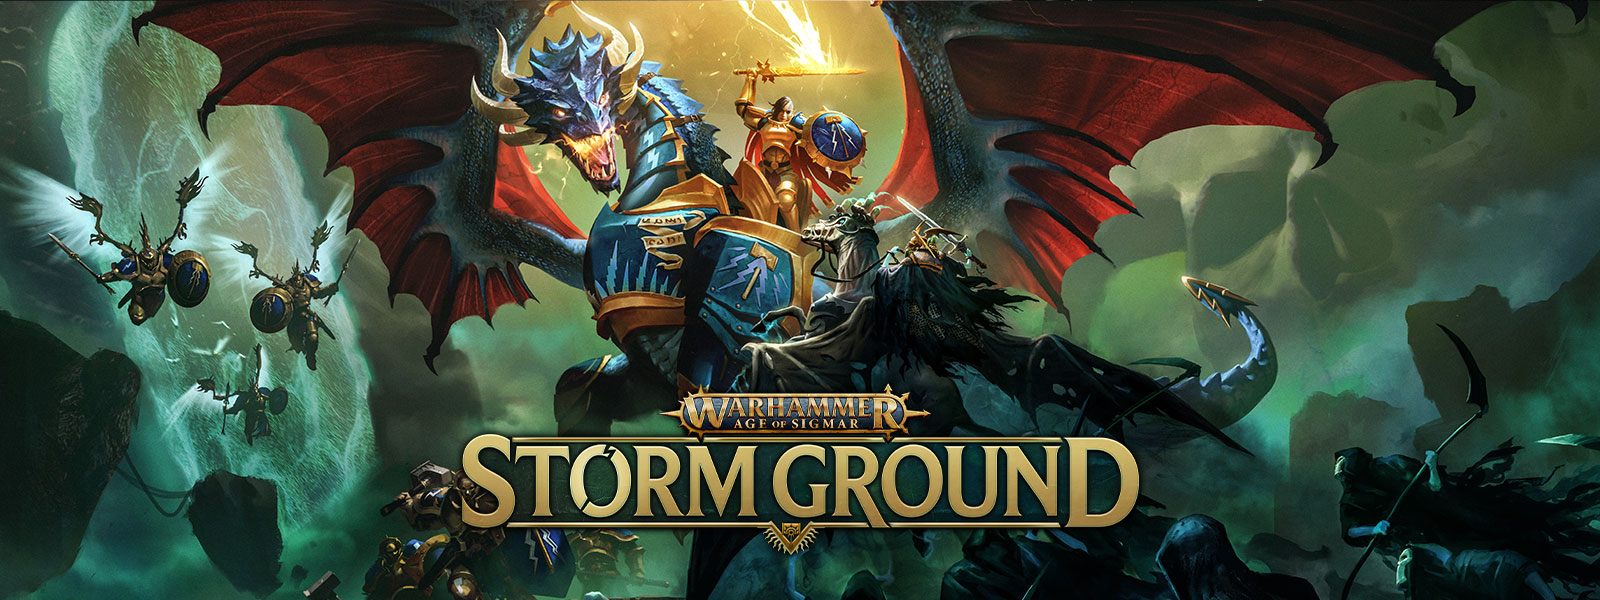 Warhammer Age of Sigmar: Storm Ground, Egy páncélos sárkányon lovagló harcos légi csatát vív egy csontvázsereggel.